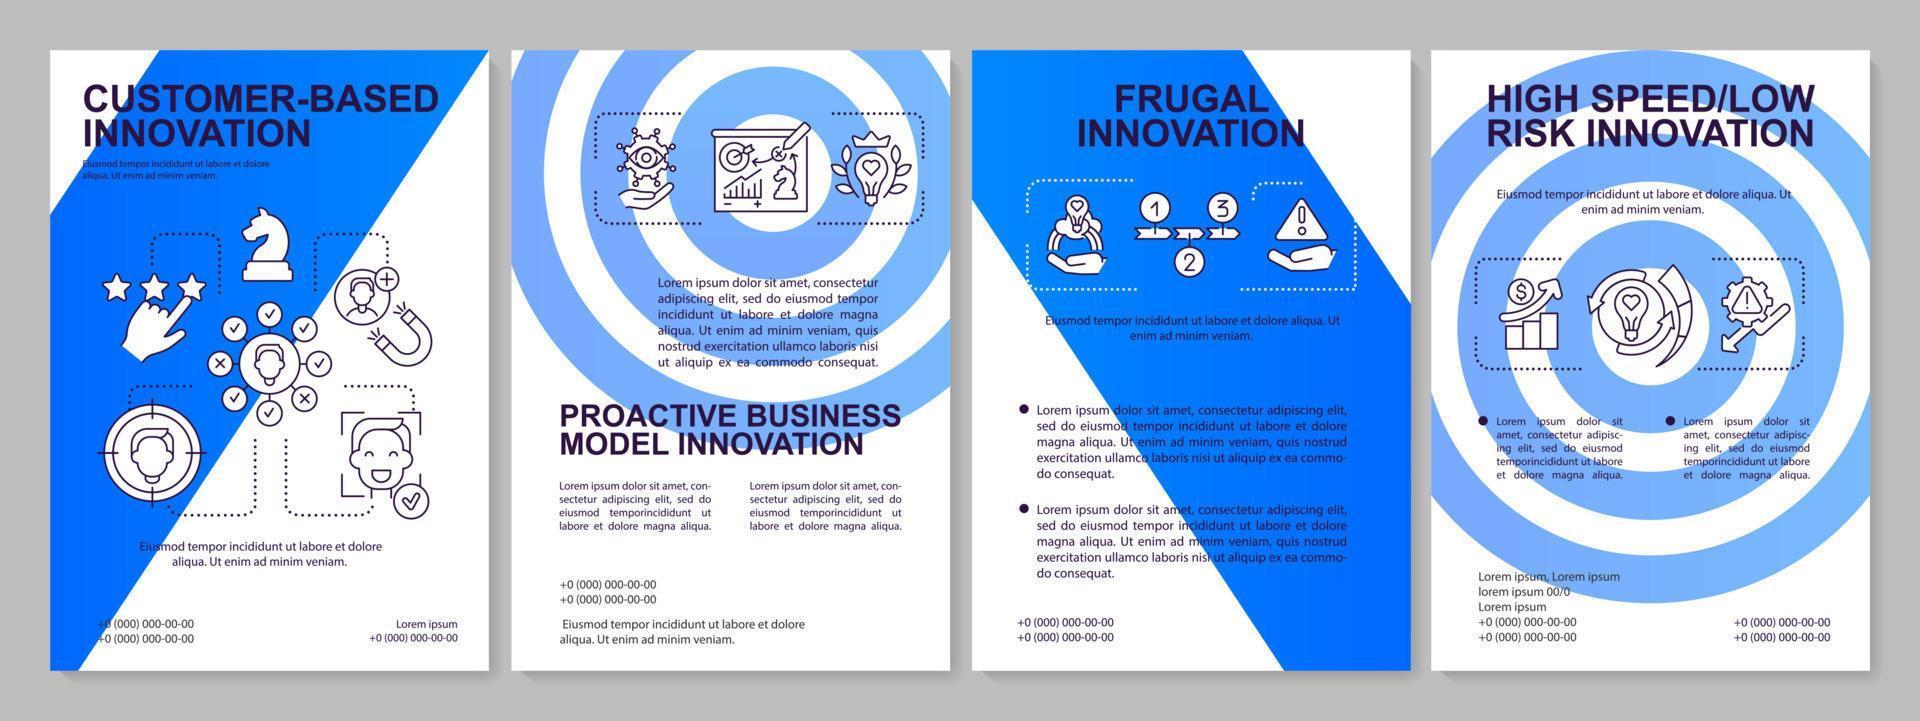 framtida av innovation förvaltning aspekter blå broschyr mall. låg risk. folder design med linjär ikoner. 4 vektor layouter för presentation, årlig rapporterar.